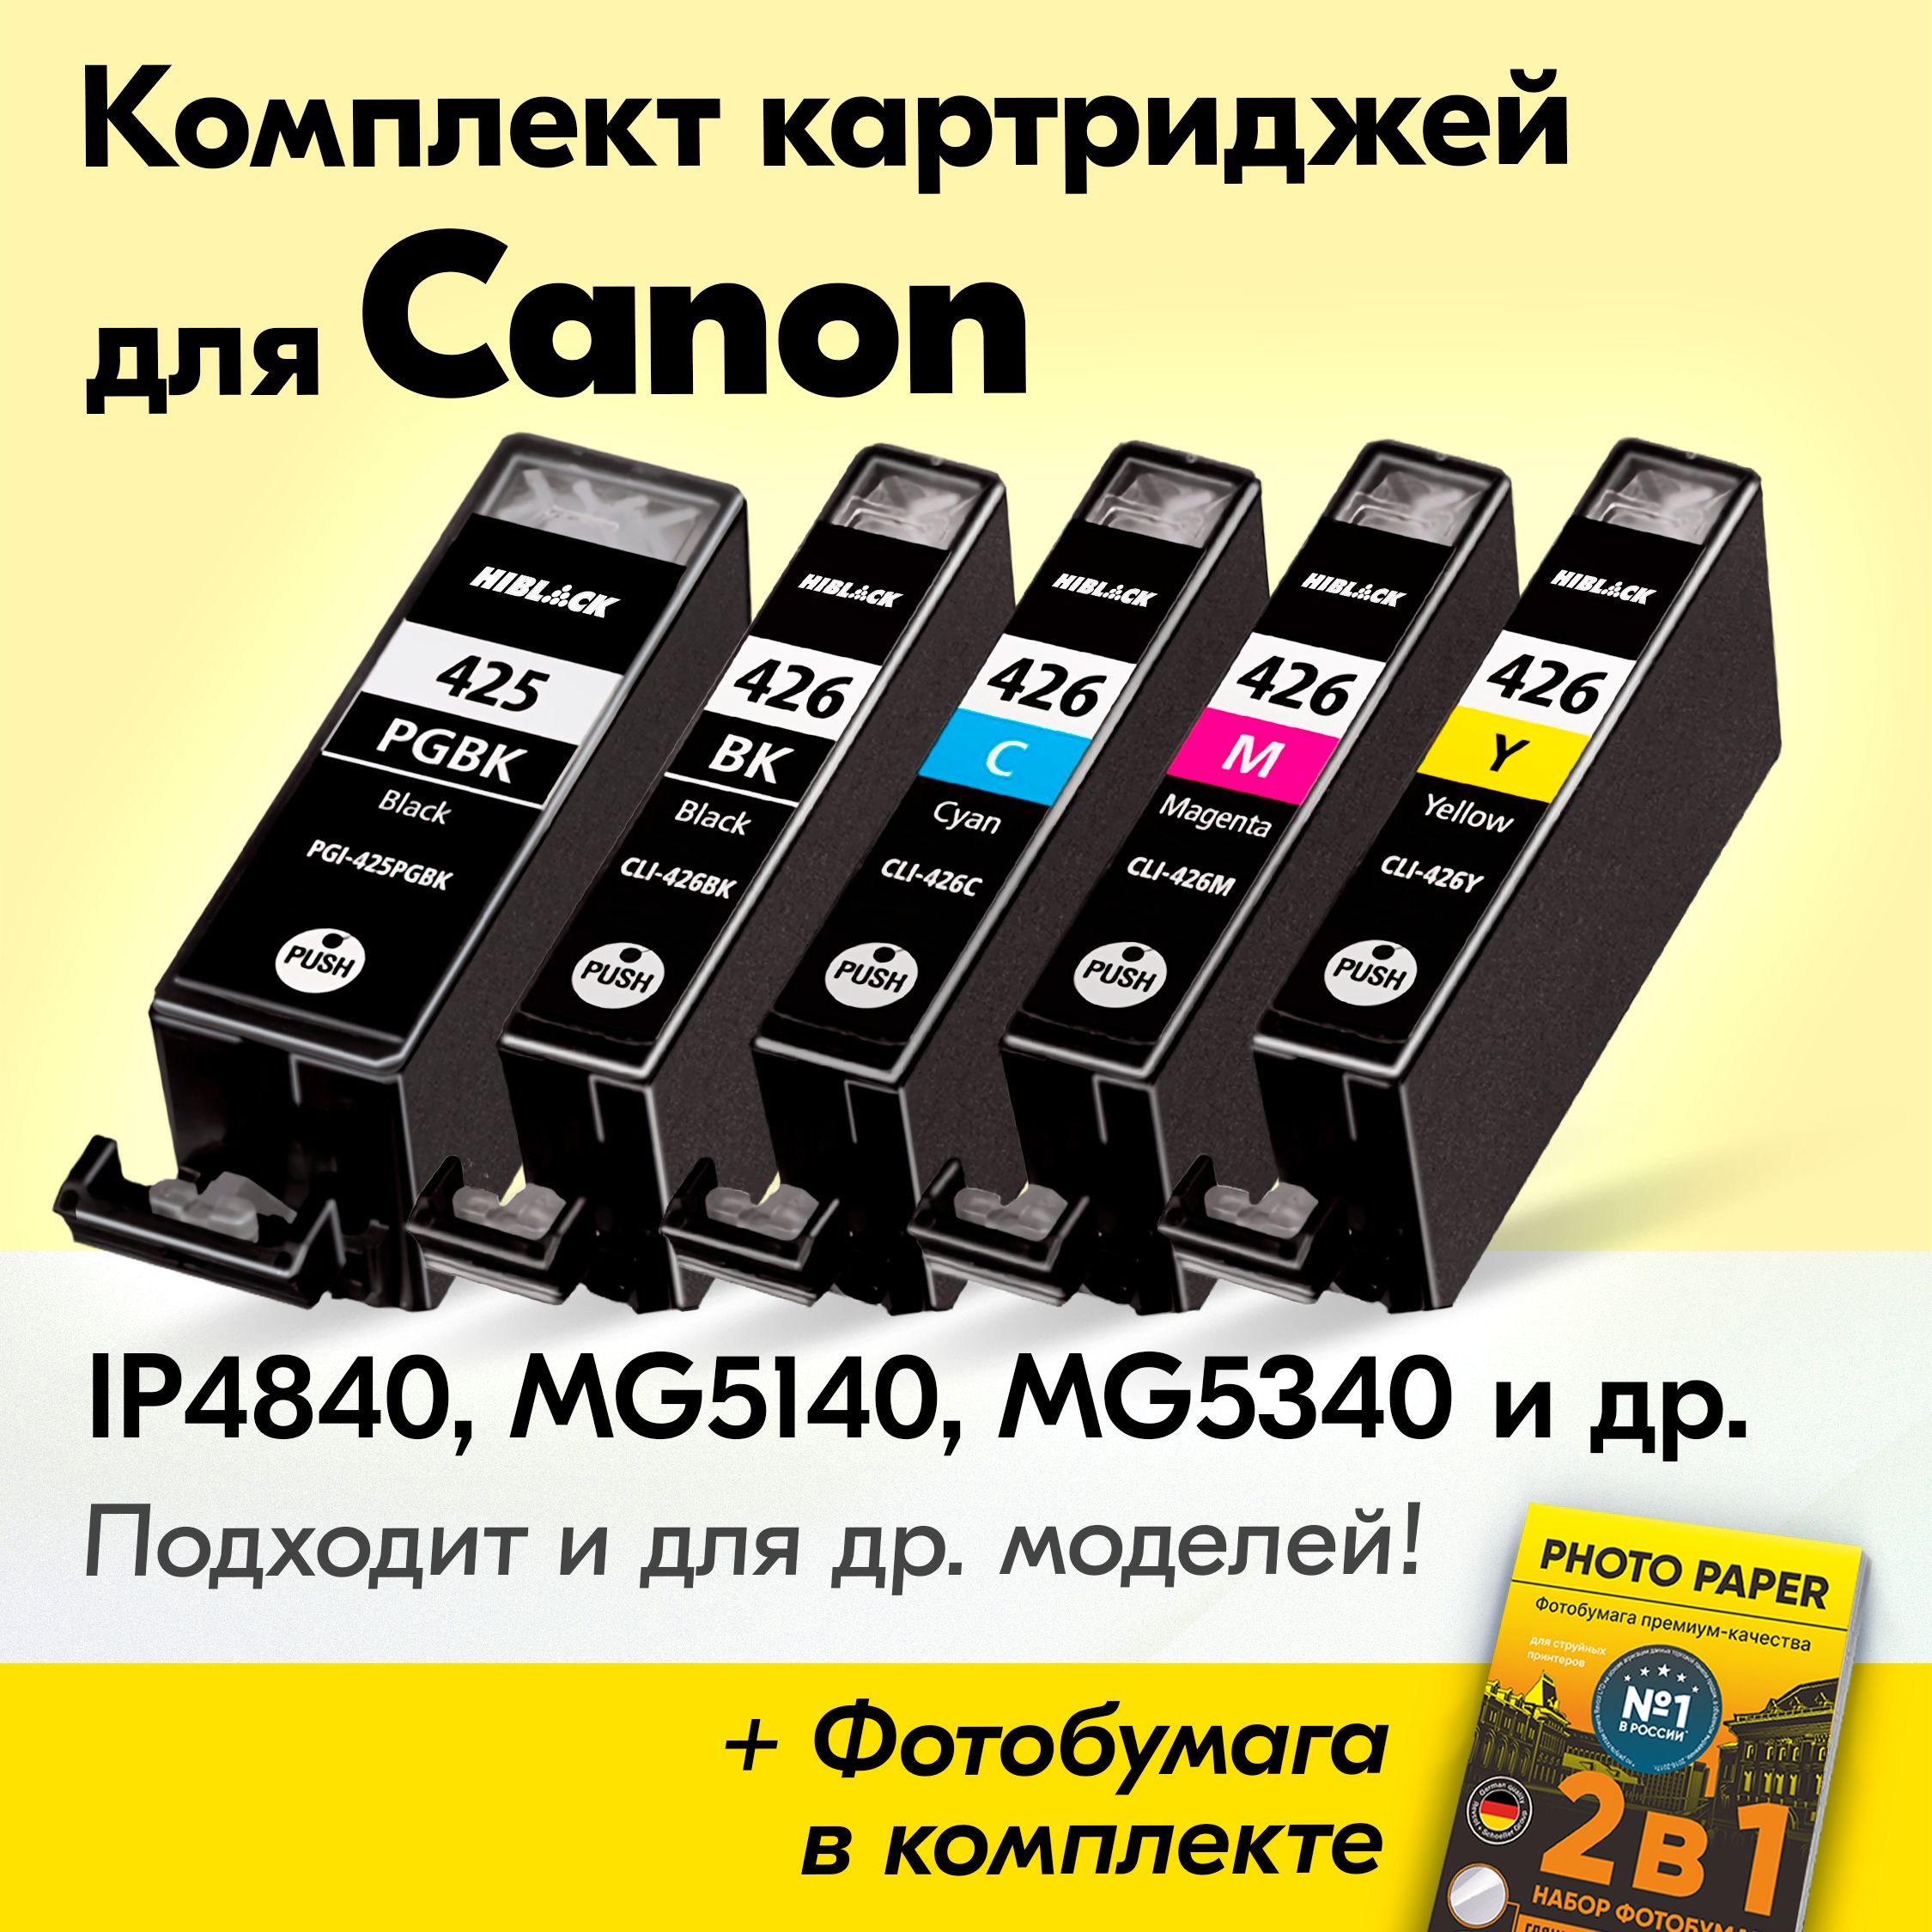 КартриджидляCanonPGI-425,CLI-426,CanonPIXMAiP4840,MG5140,MG5340,MG6140,MG5240(Комплектиз5шт)счернилами(скраской)дляструйногопринтера,Черный,ФотоЧерный,Голубой,Пурпурный,Желтый,увеличенныйобъем,заправляемые